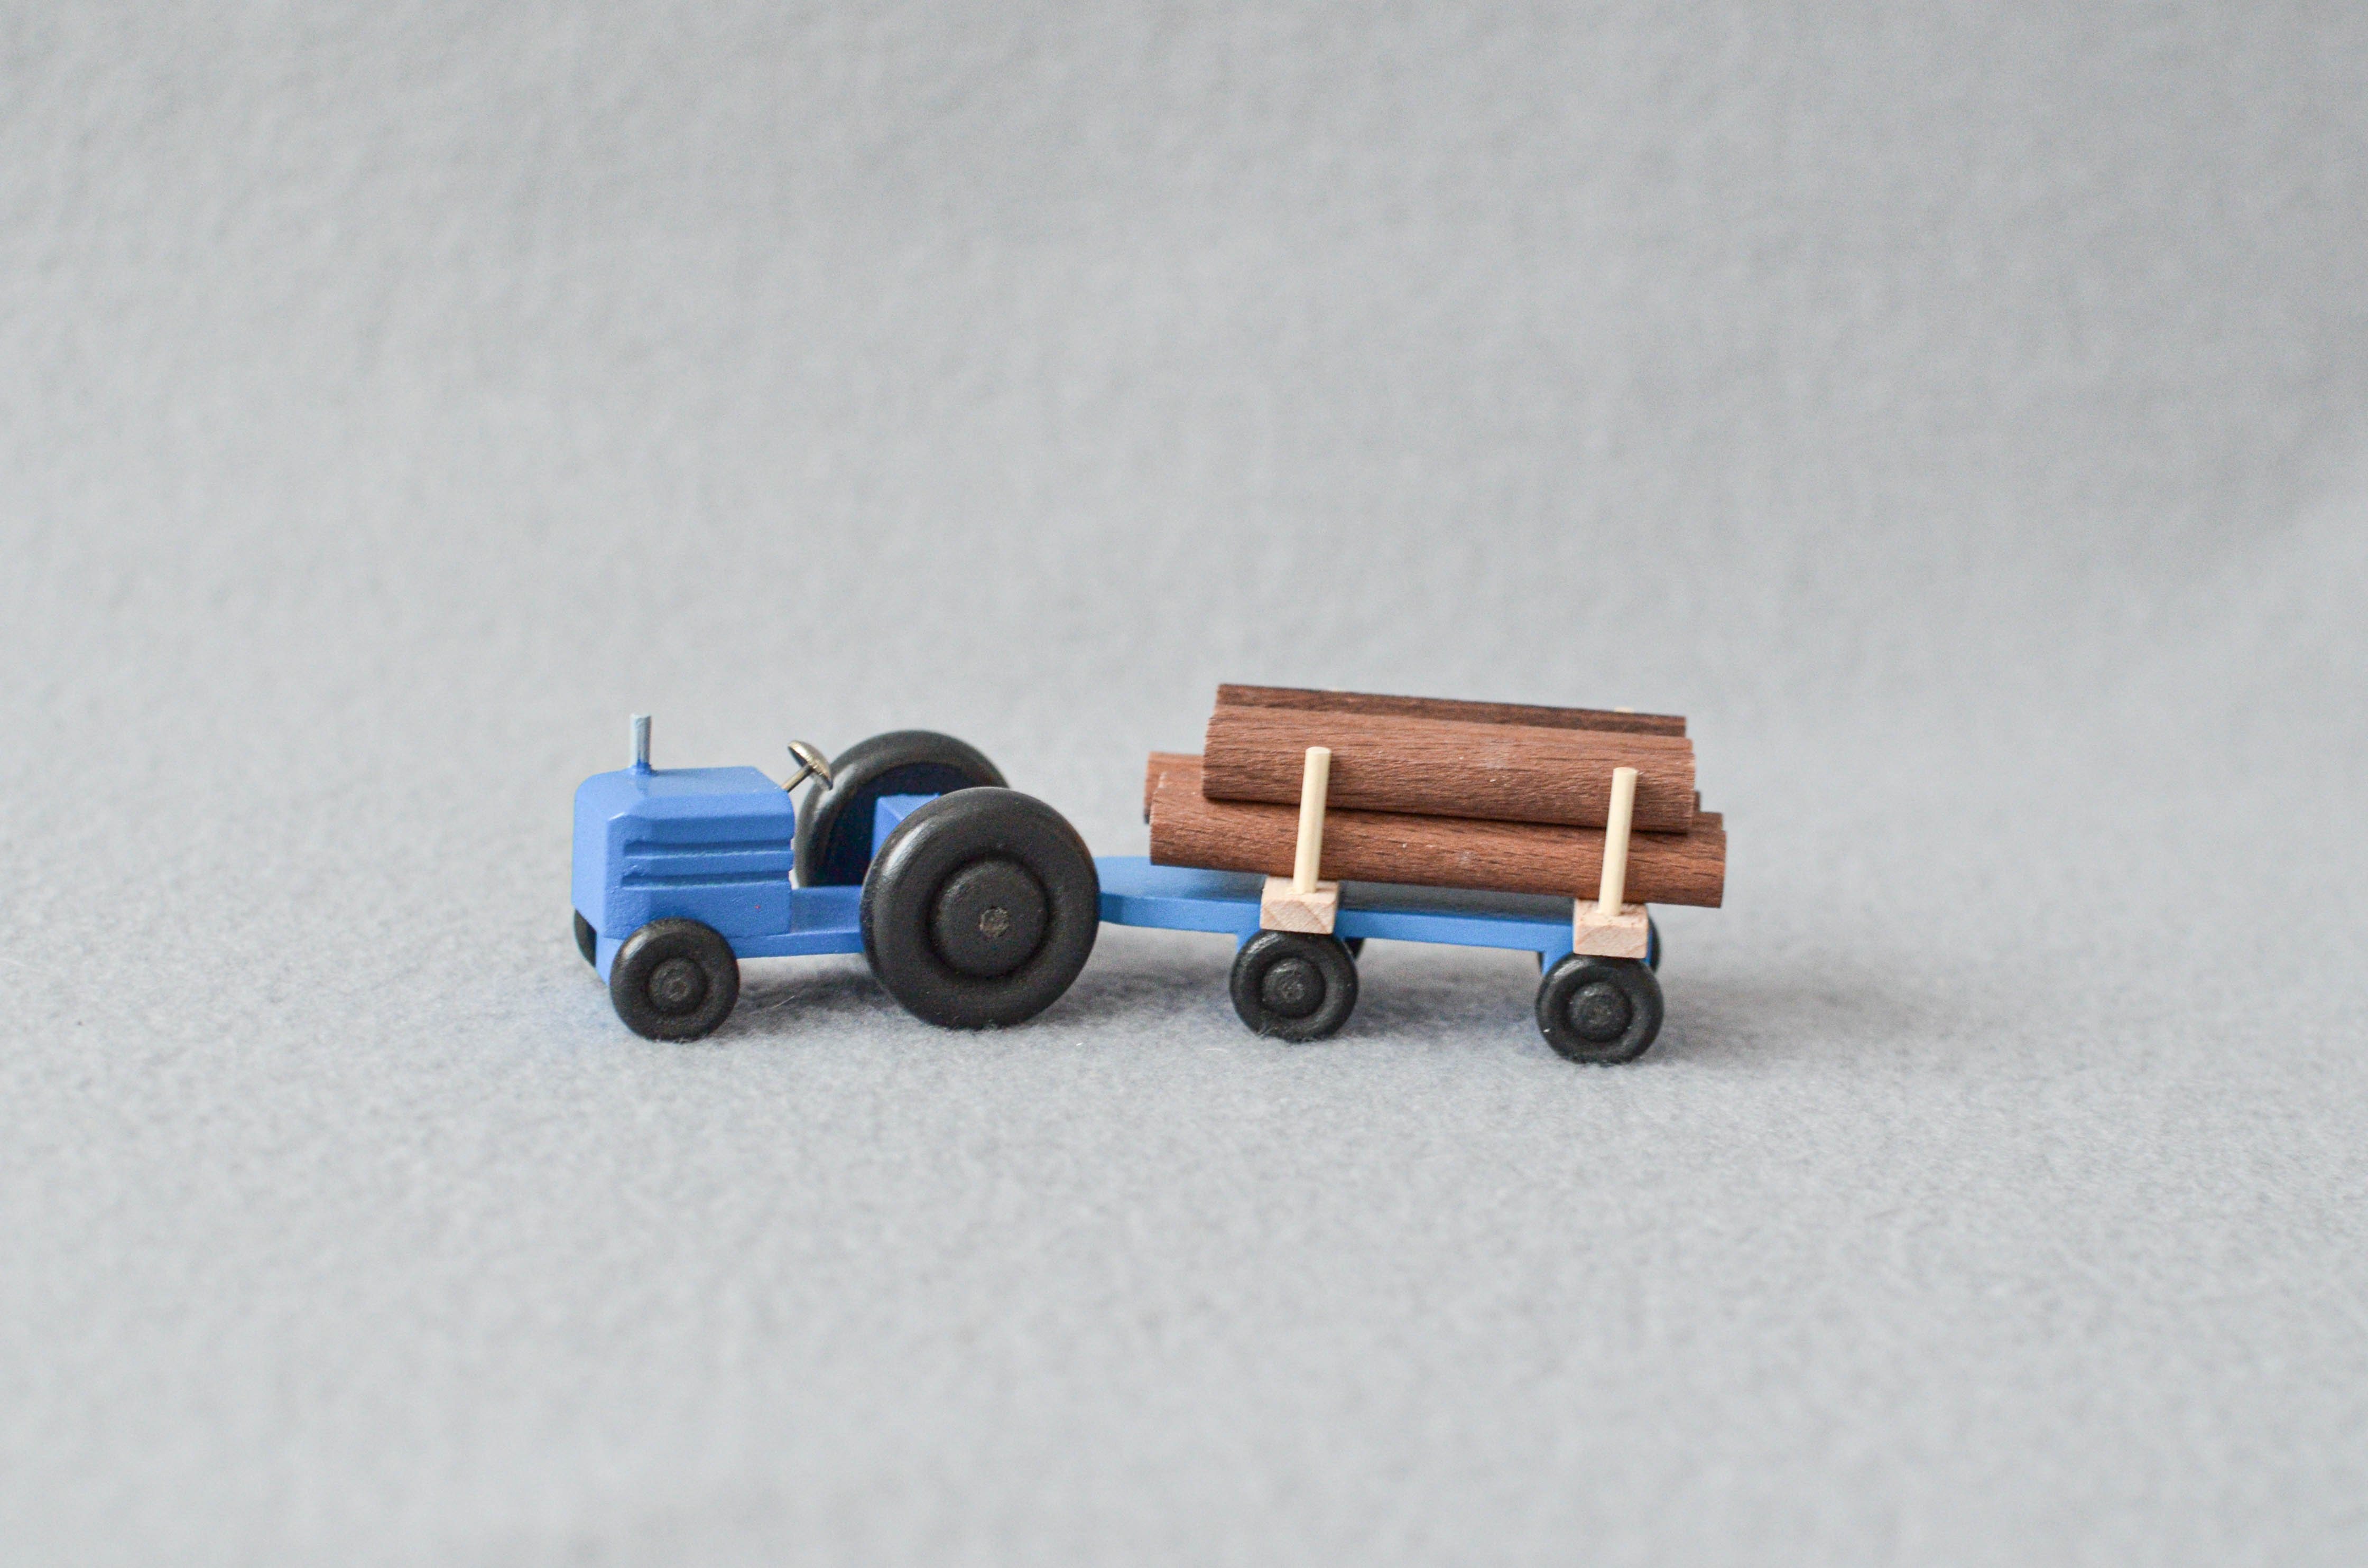 Spielzeug-Auto Holzspielzeug Traktor mit Rundholz HxBxT 3,5x7,5x3cm NEU, Mit Anhänger, mit Langholz